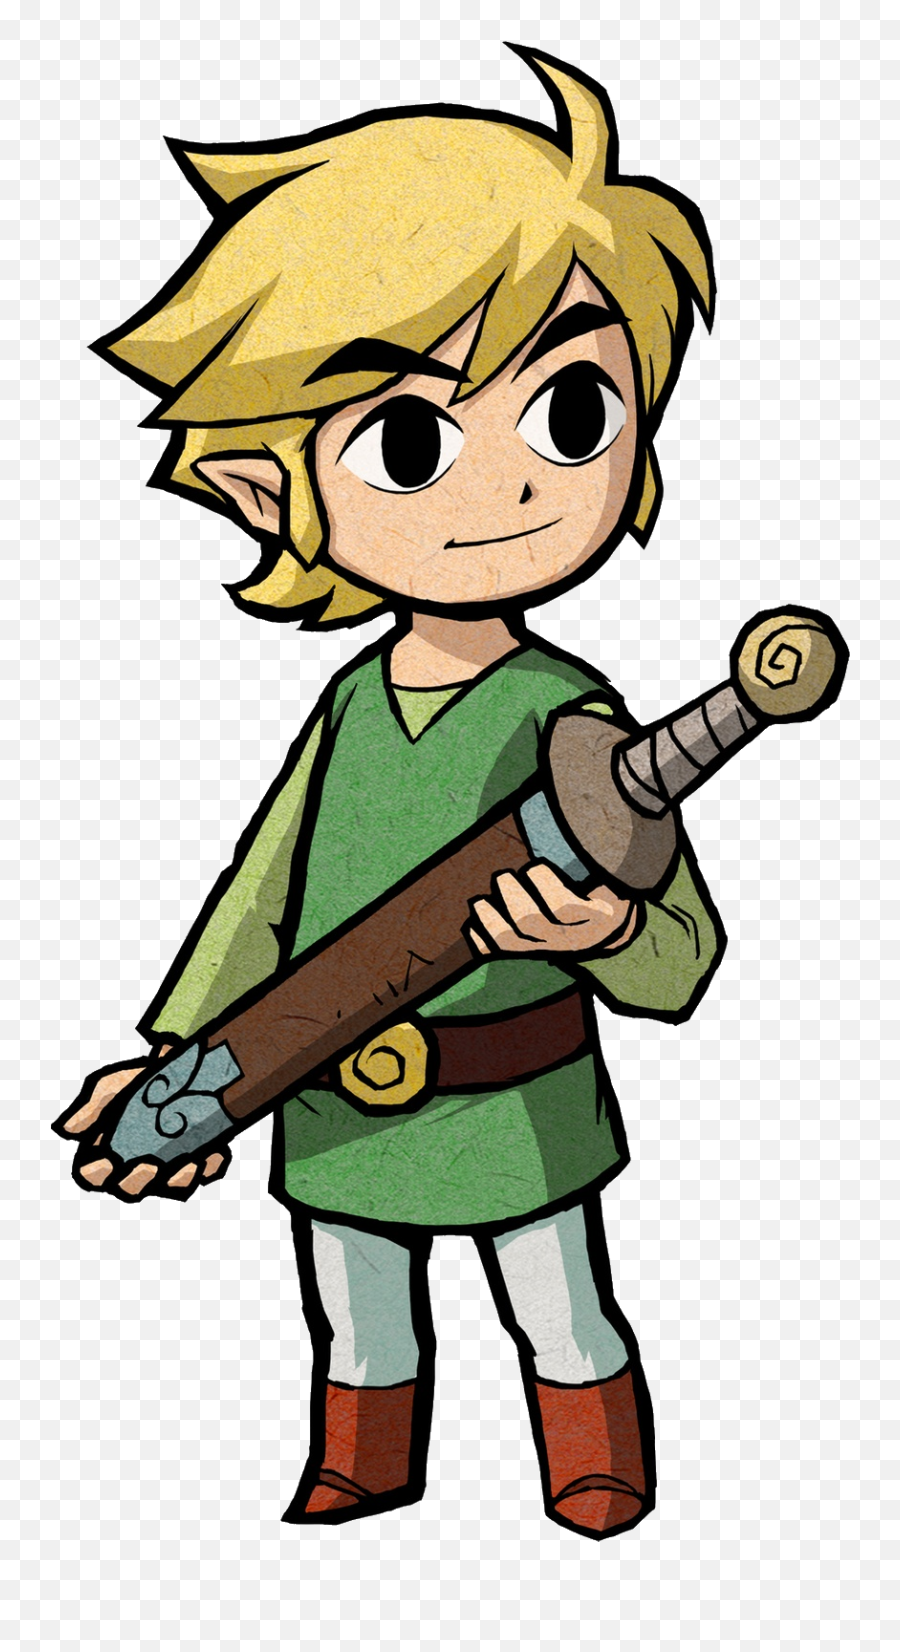 Zelda Link Png Picture - Link Minish Cap Emoji,Link Png